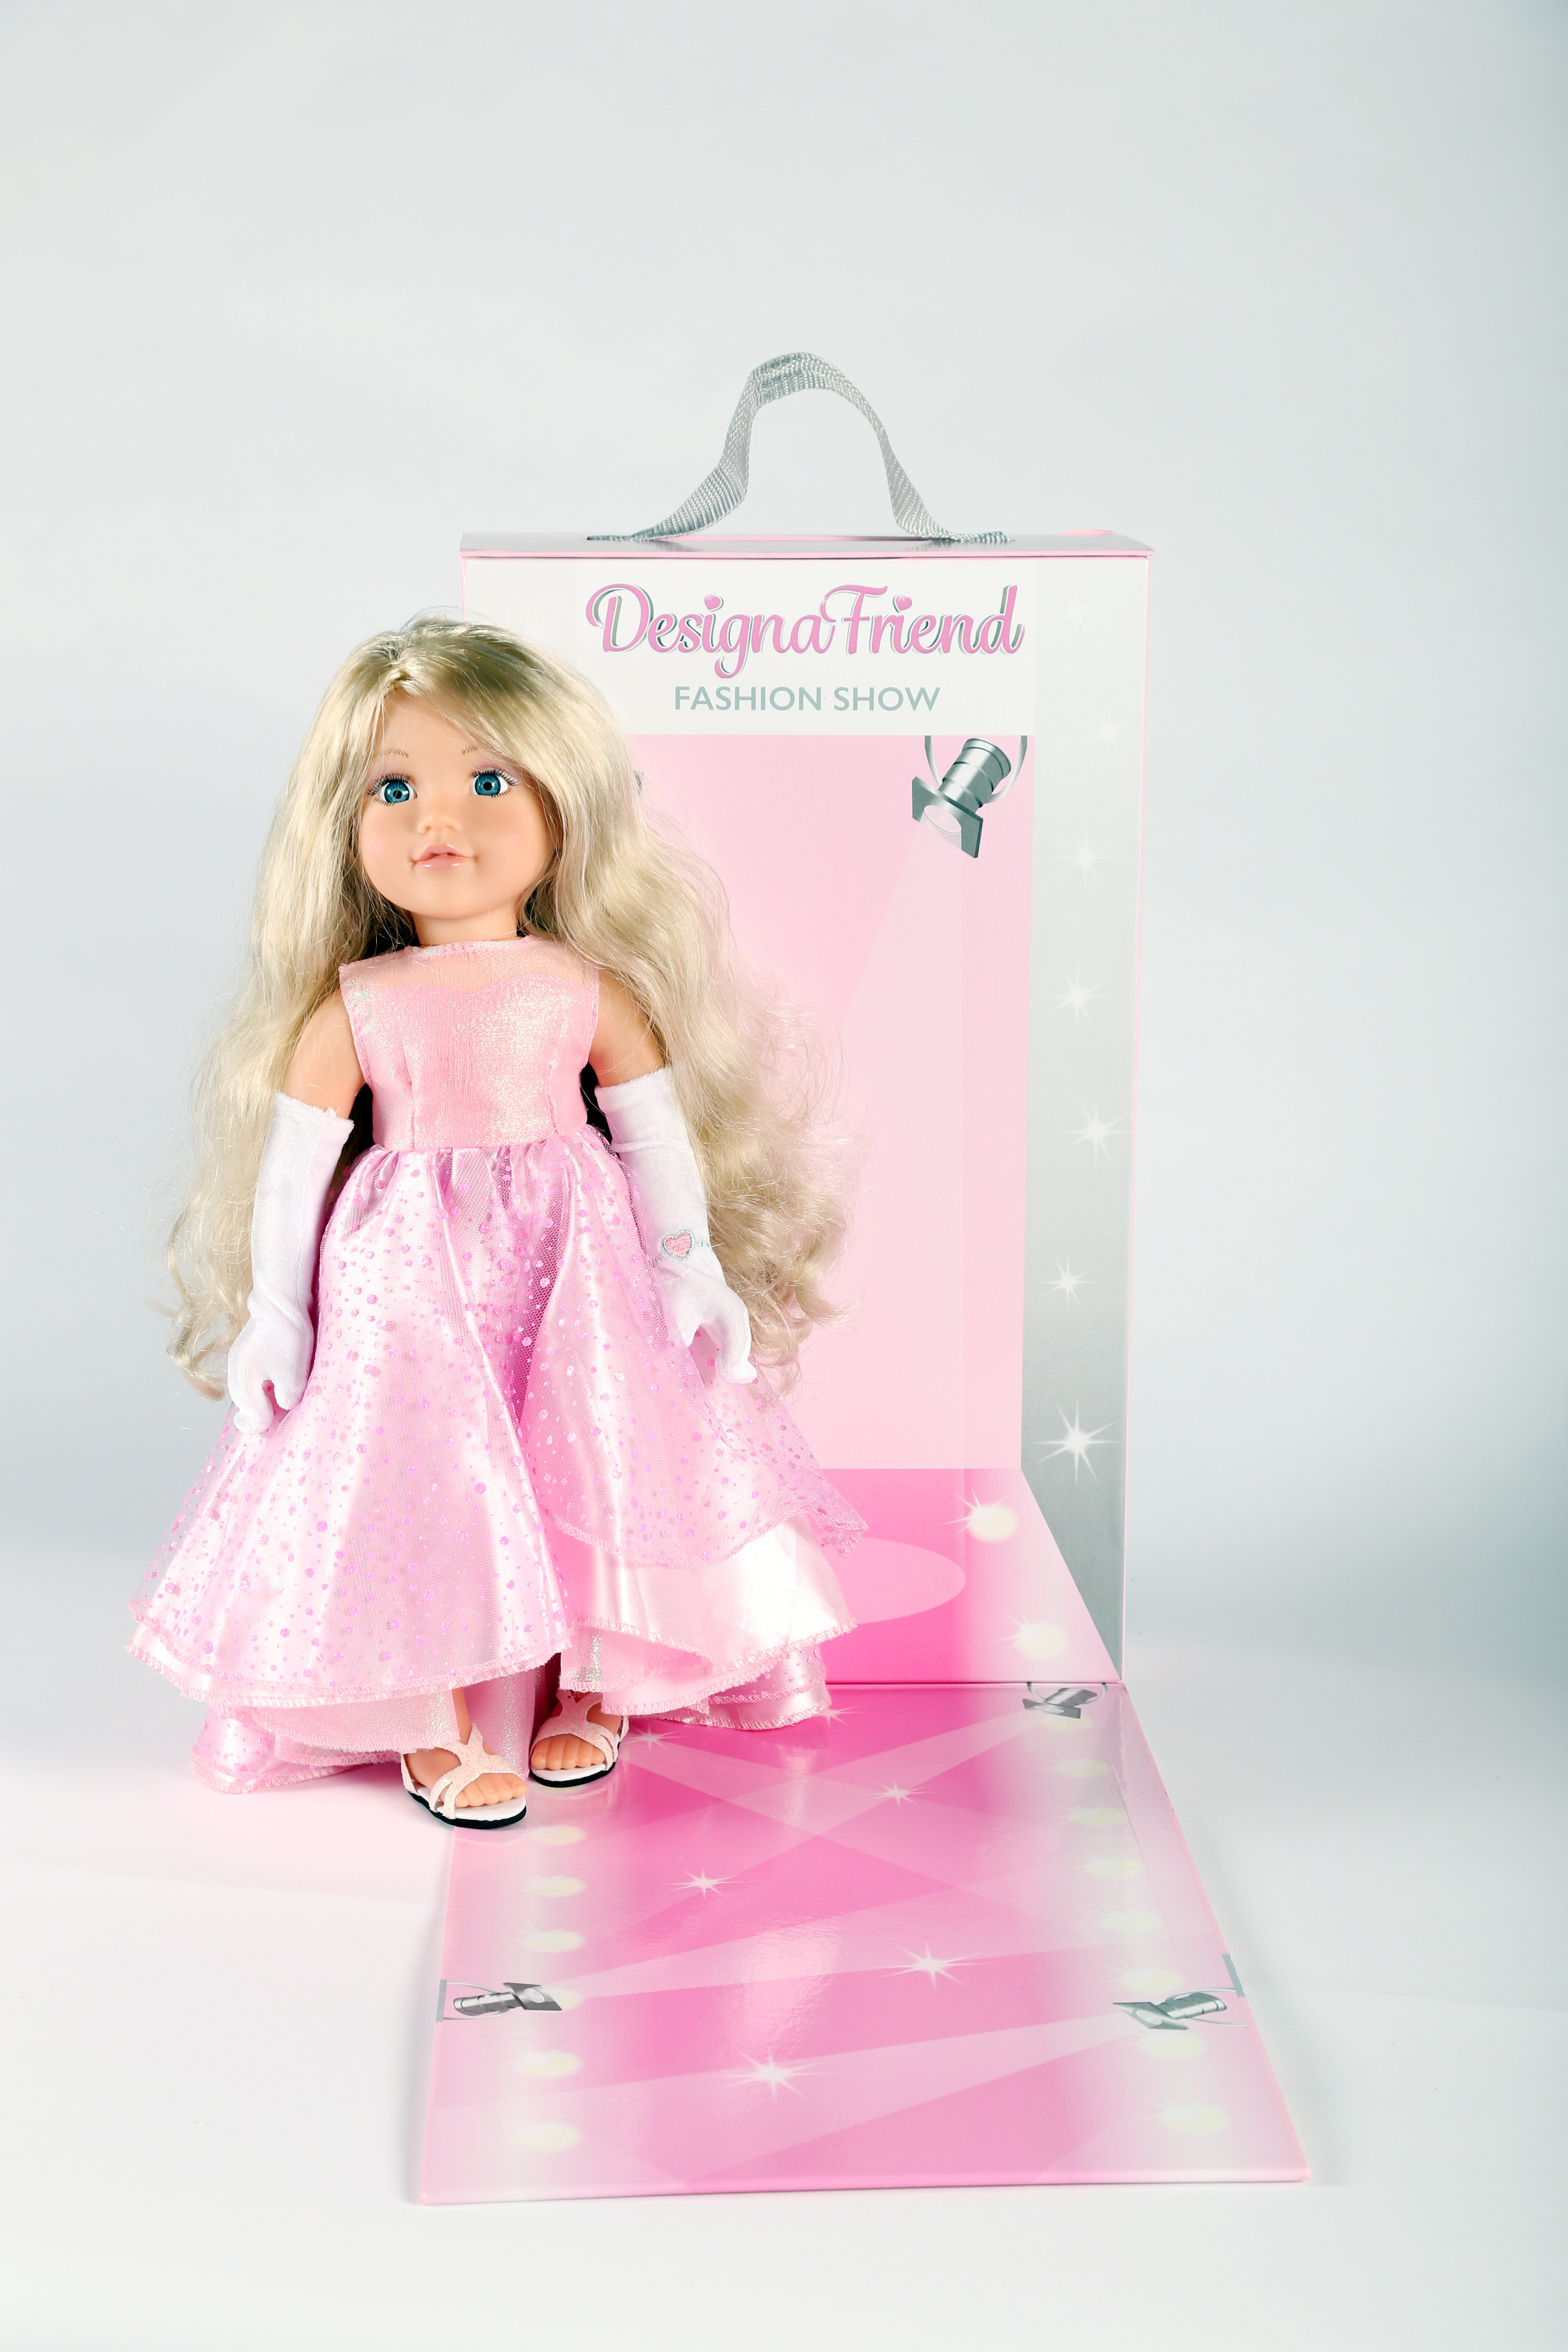 argos dolls design a friend